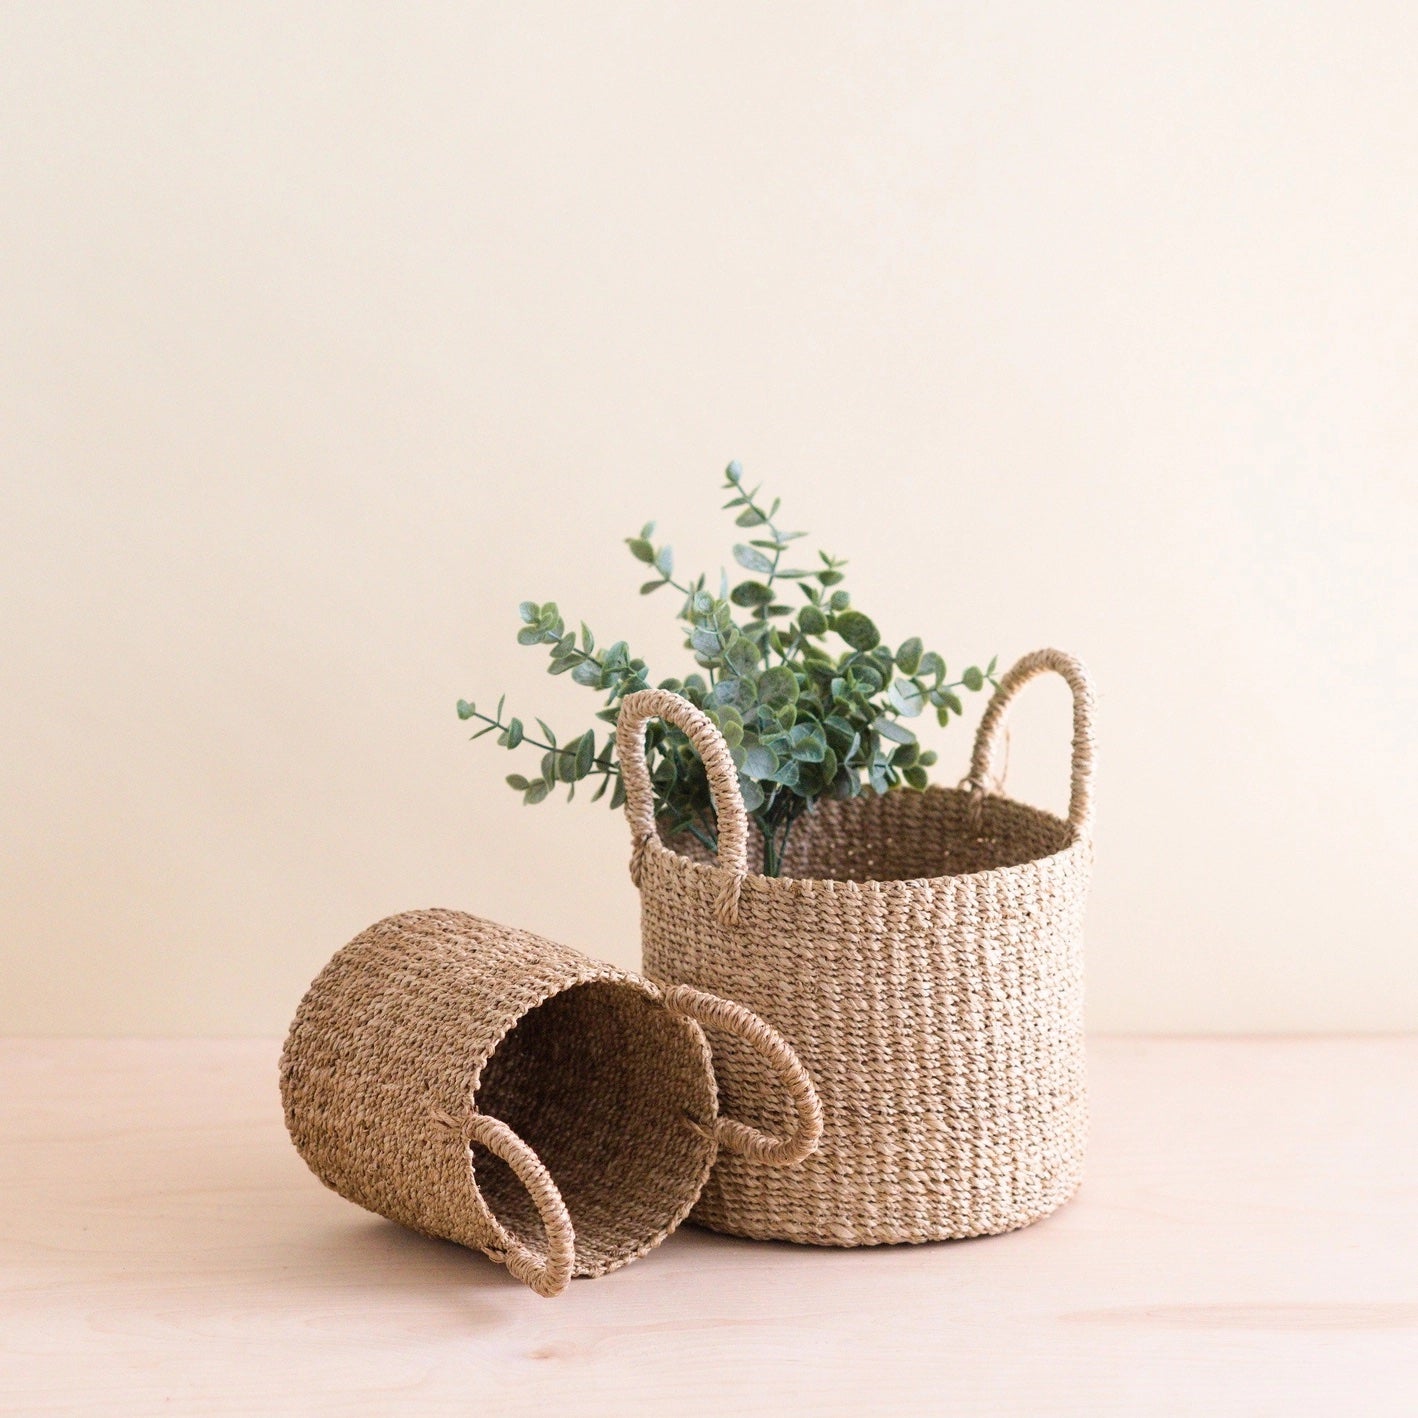 Natural Tabletop Mini Basket Set - Weave Baskets